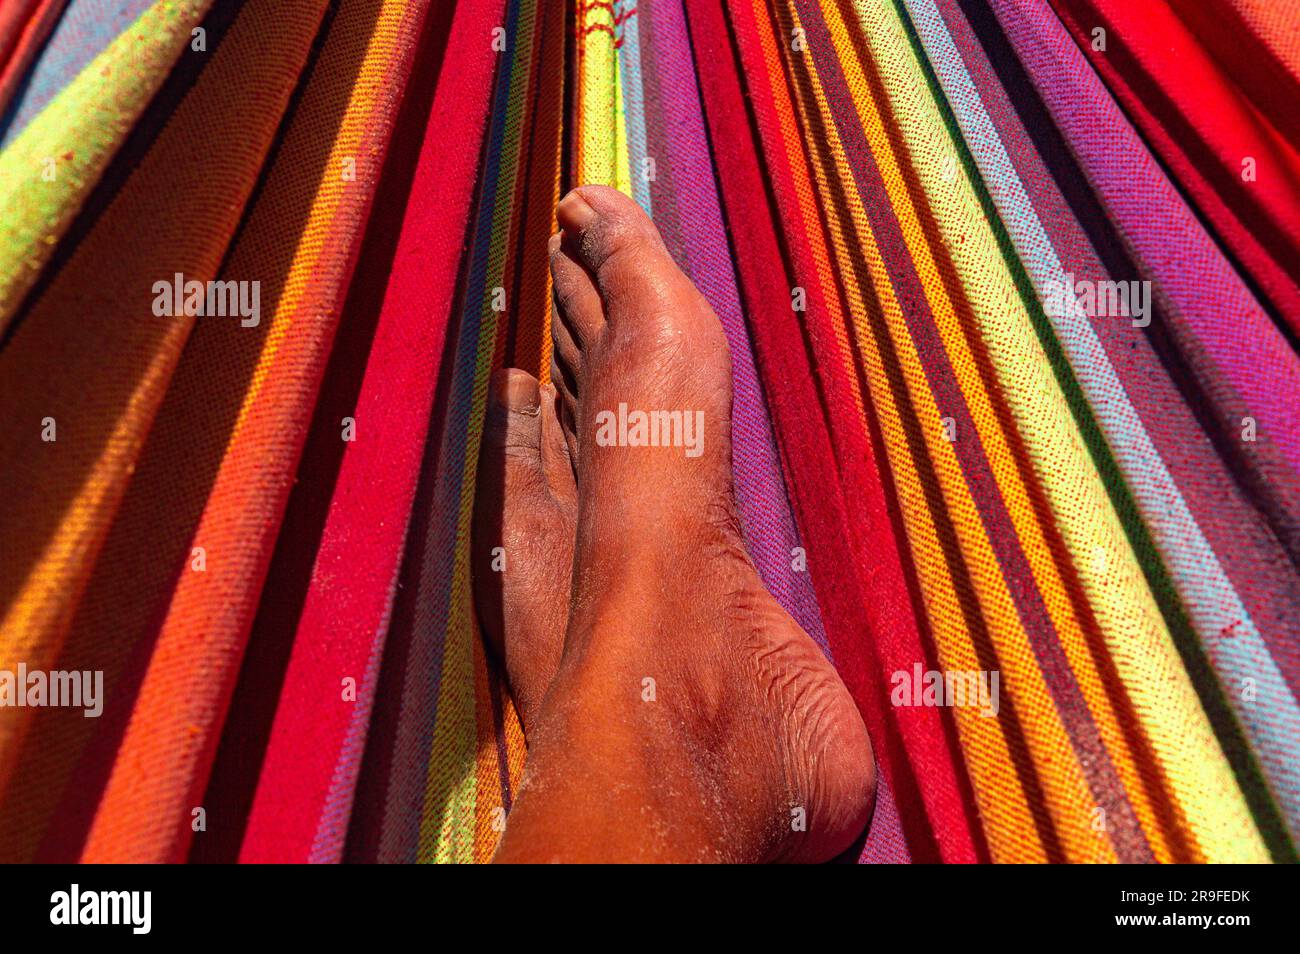 Une vue rapprochée, mettant l'accent sur les pieds d'une personne de couleur reposant tranquillement dans un hamac vibrant et accrocheur. Banque D'Images